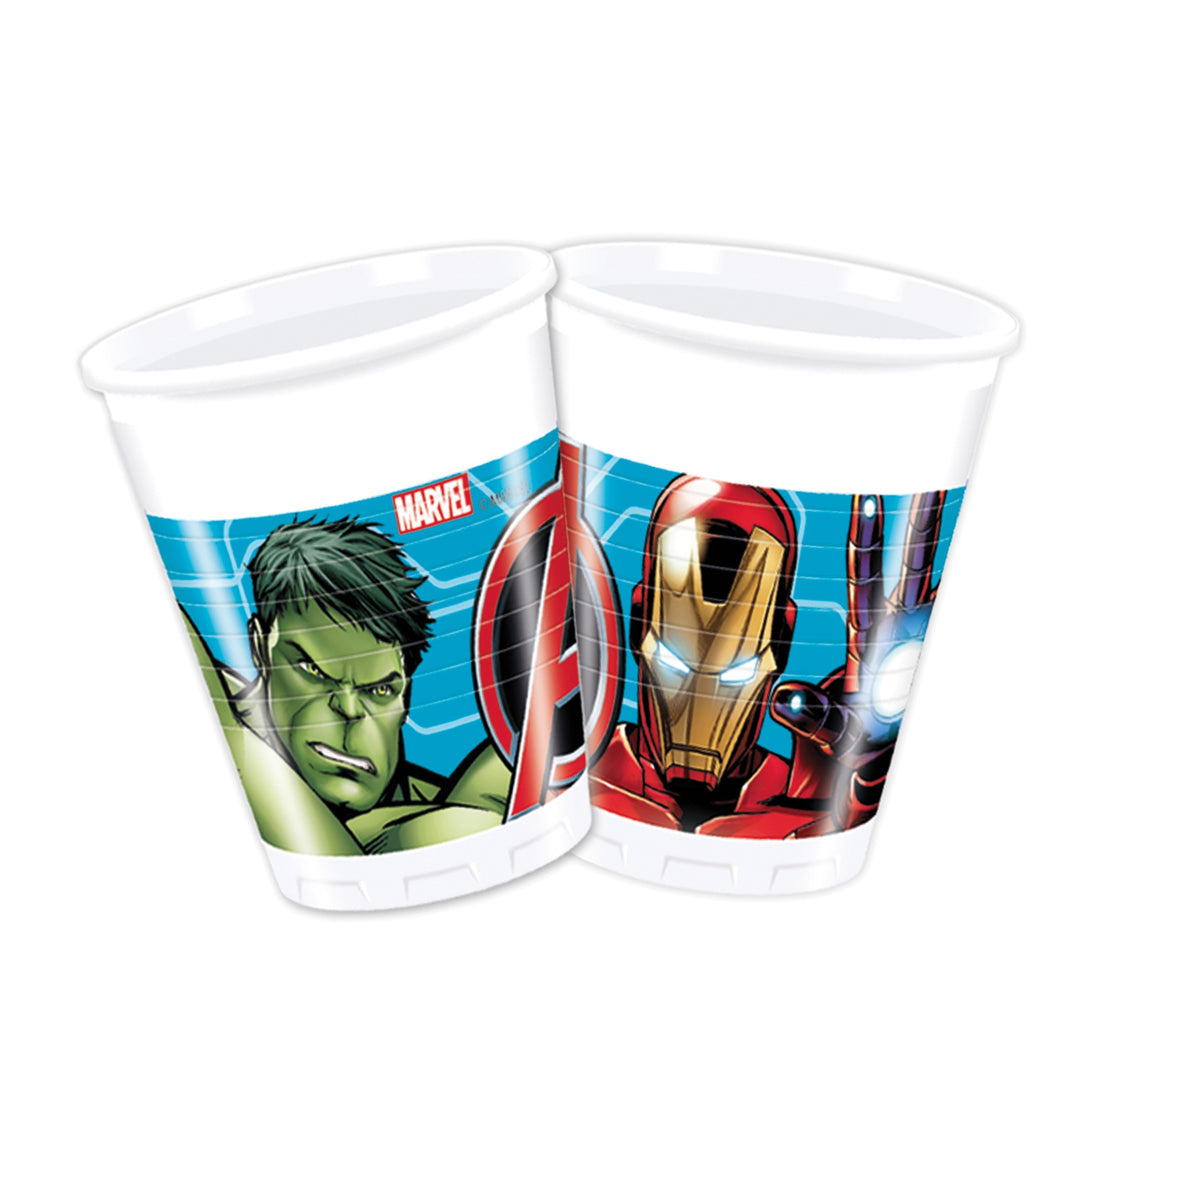 Bicchieri in plastica coordinato tavola addobbi festa Avengers